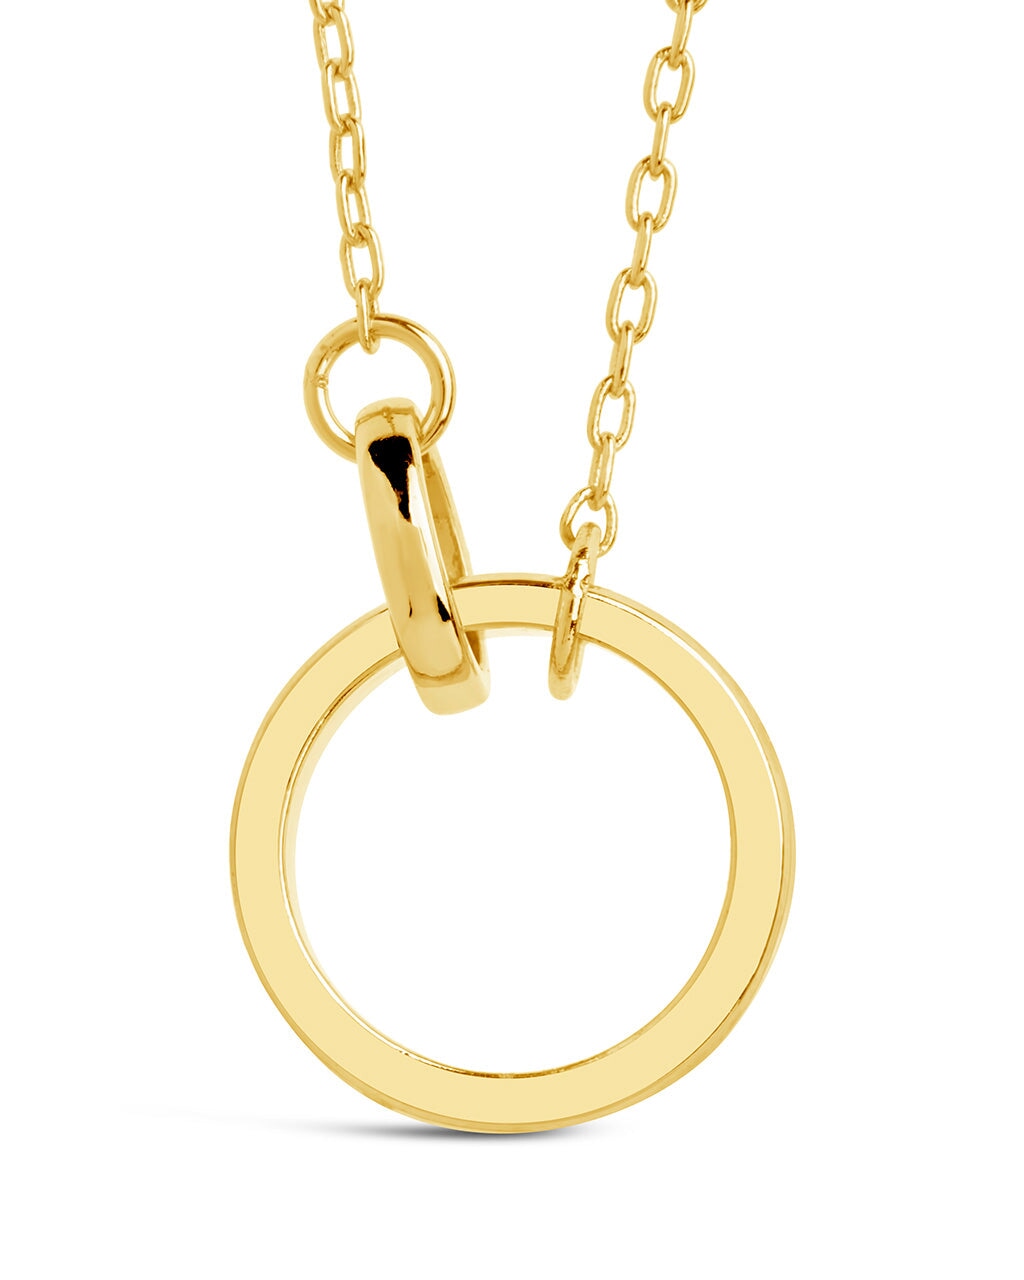 Mishel Interlocking Necklace Necklace Sterling Forever Gold 